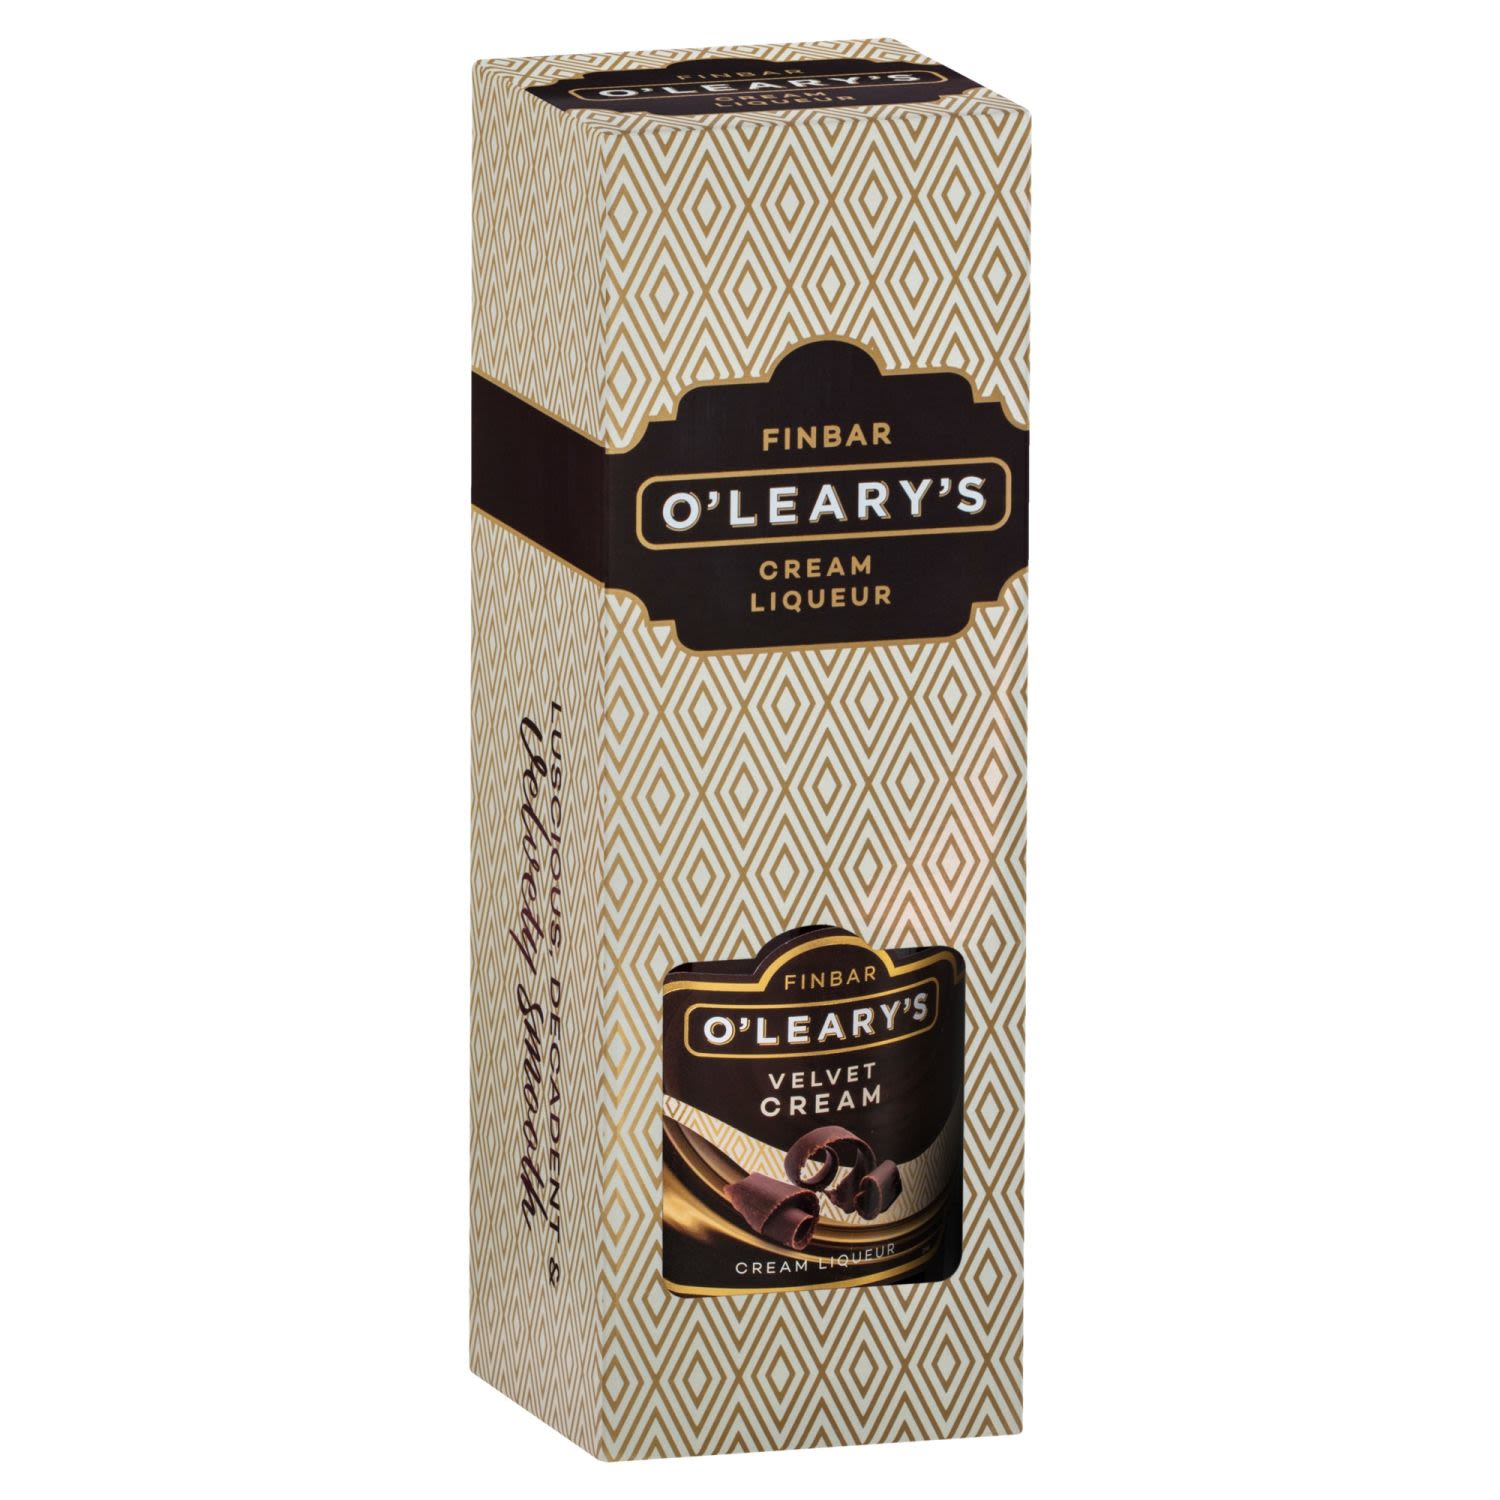 Finbar O'Leary's Velvet Cream 700mL Bottle